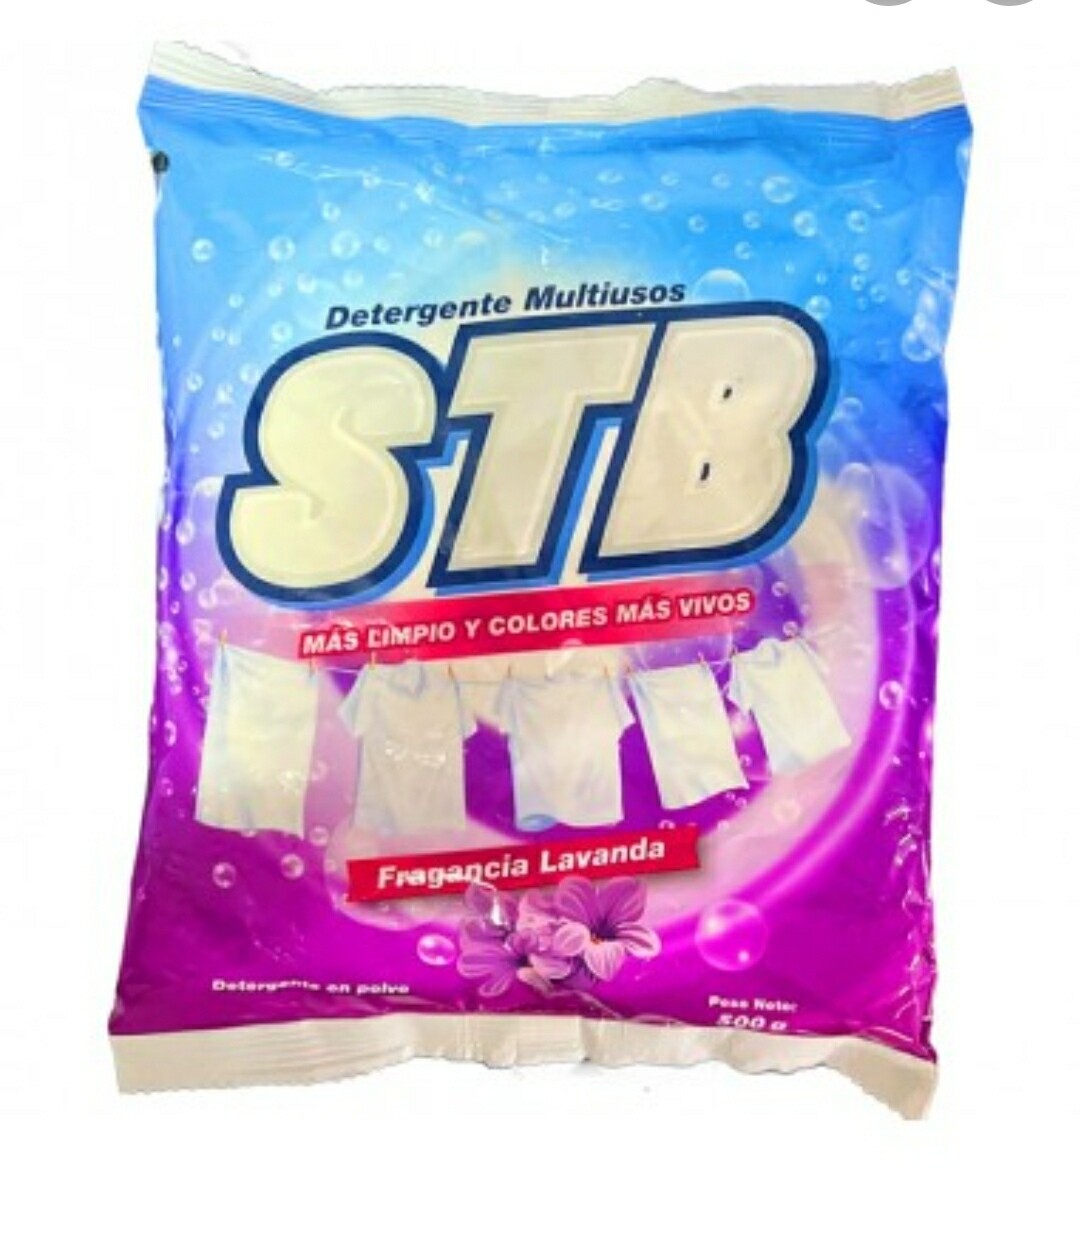 Detergente "STB" multiusos (500 g)